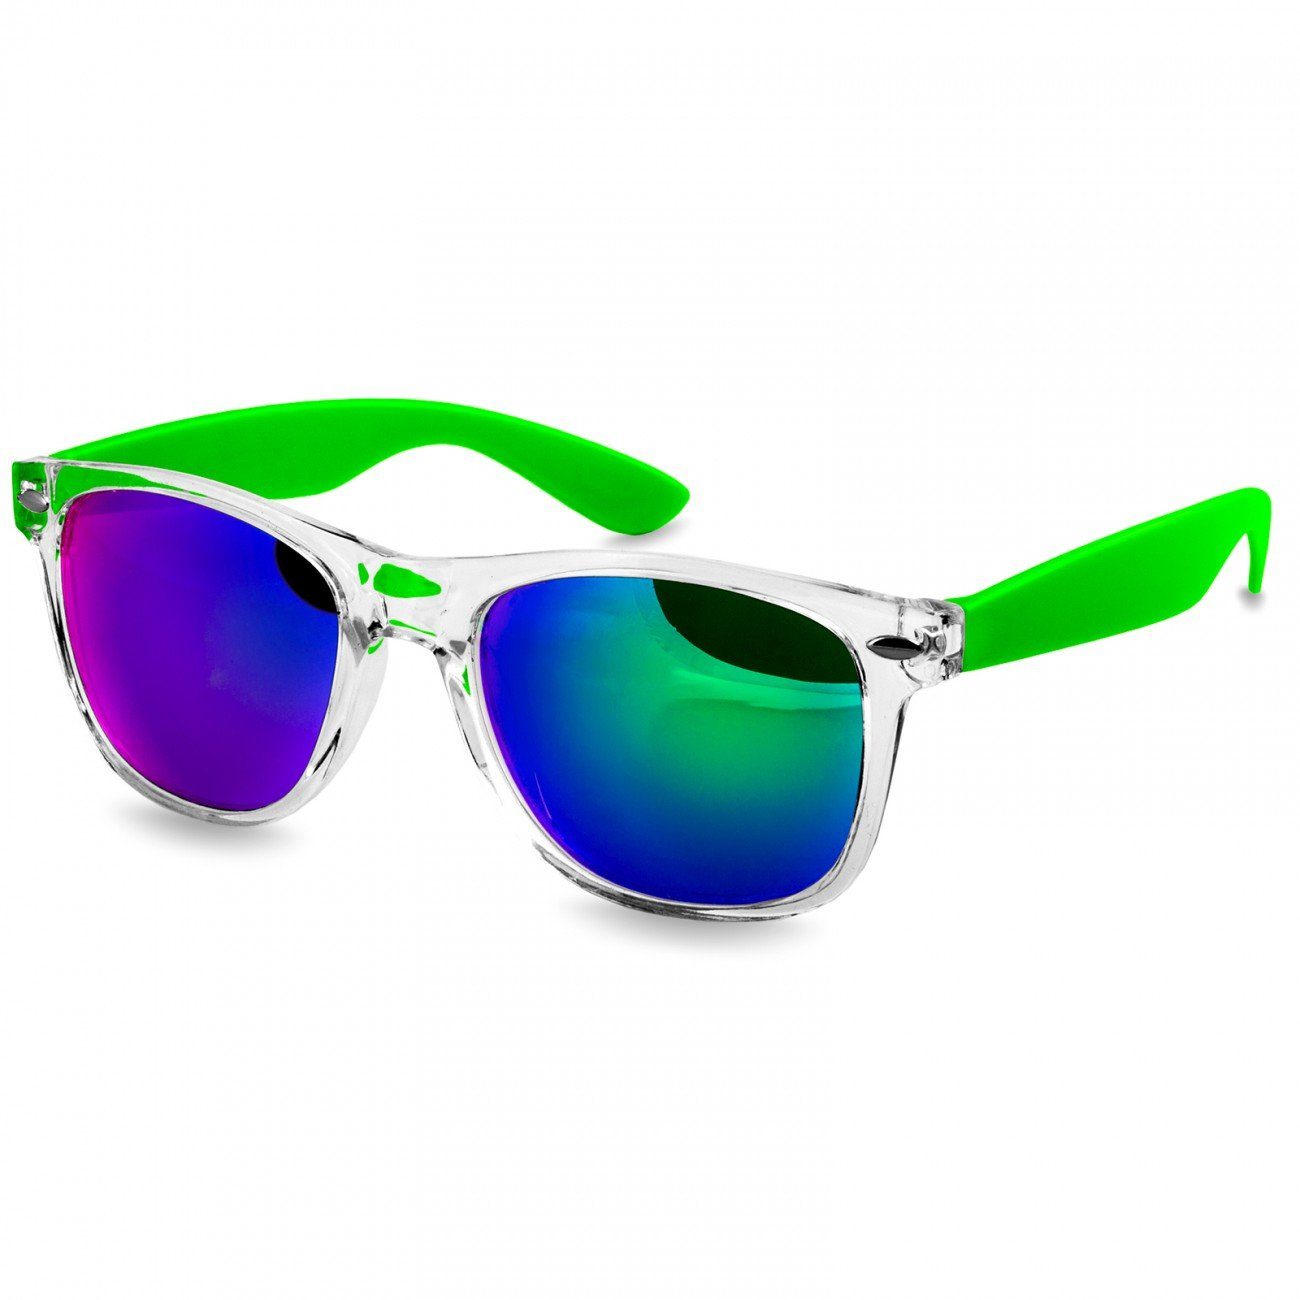 / Sonnenbrille grün verspiegelt Damen hellgrün Designbrille SG017 Caspar RETRO